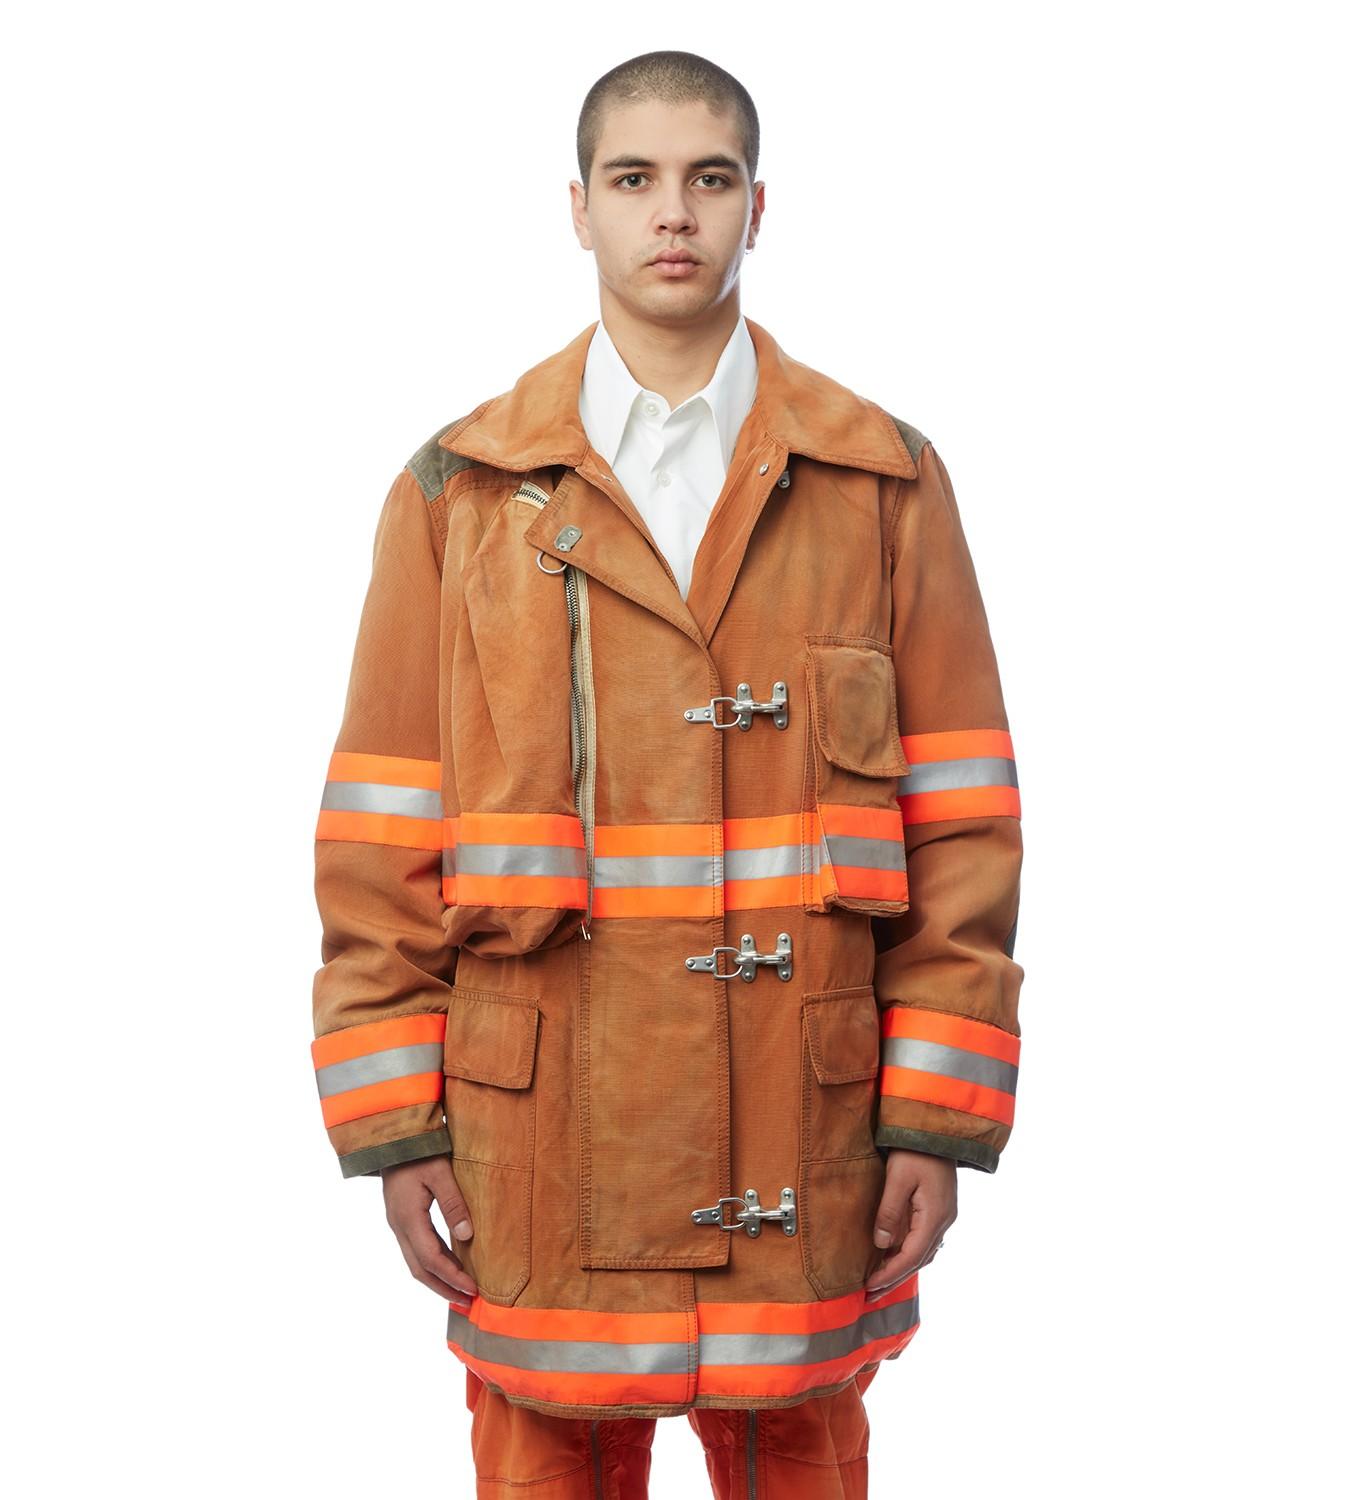 Calvin Klein 205w39nyc Fireman Jacket Deals - www.puzzlewood.net 1696006100